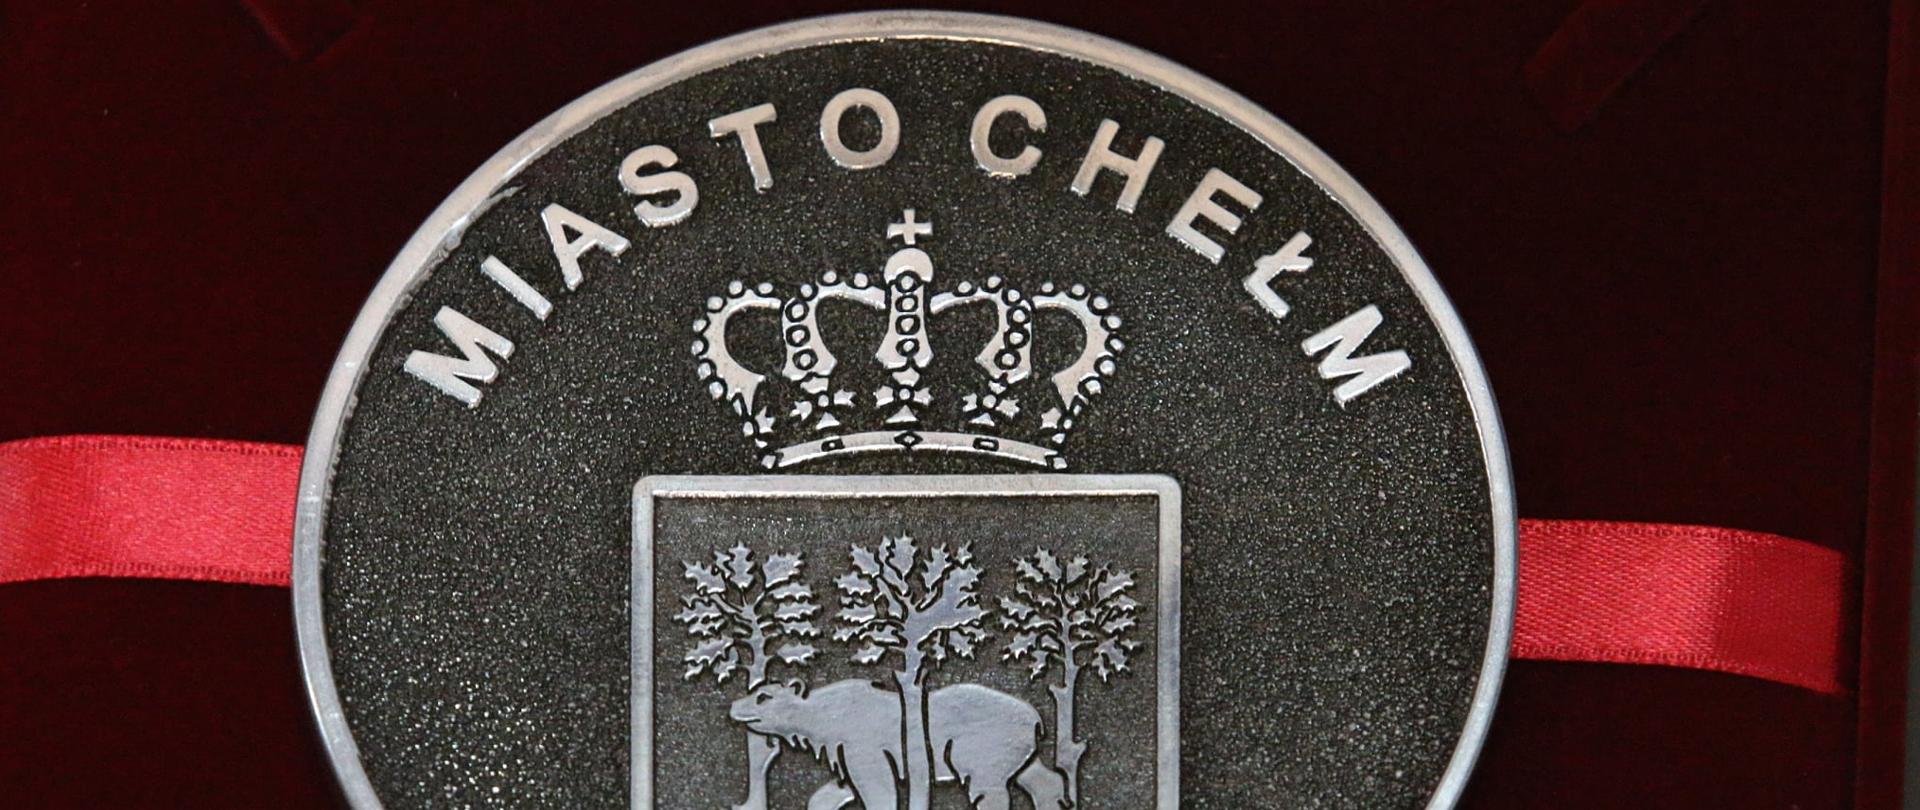 Tłoczony ze stali medal dla Chełmianina Roku. Widać na nim herb miasta (niedźwiedź pomiędzy trzema dębami), a nad herbem napis "Miasto Chełm".